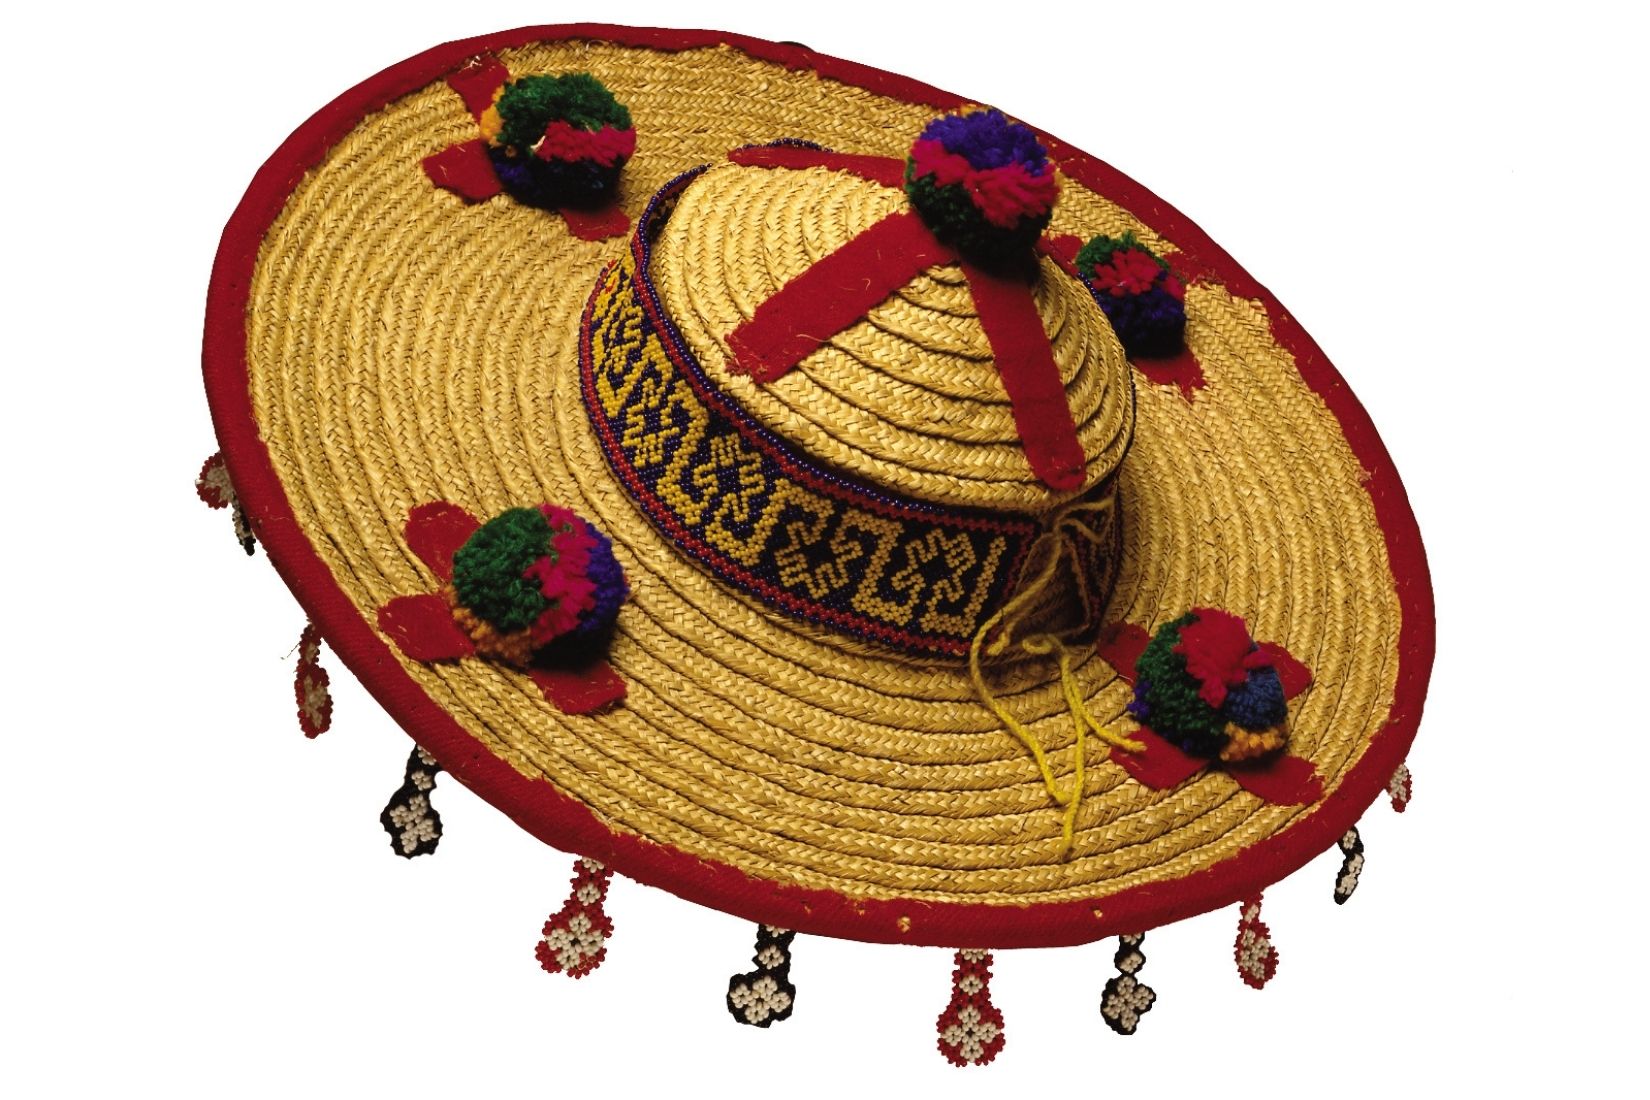 Sombrero huichol de palma tejida, estambre de lana y chaquira. Artesano desconocido. Jalisco. Col. Populart. (Foto: Nicola Lorusso).